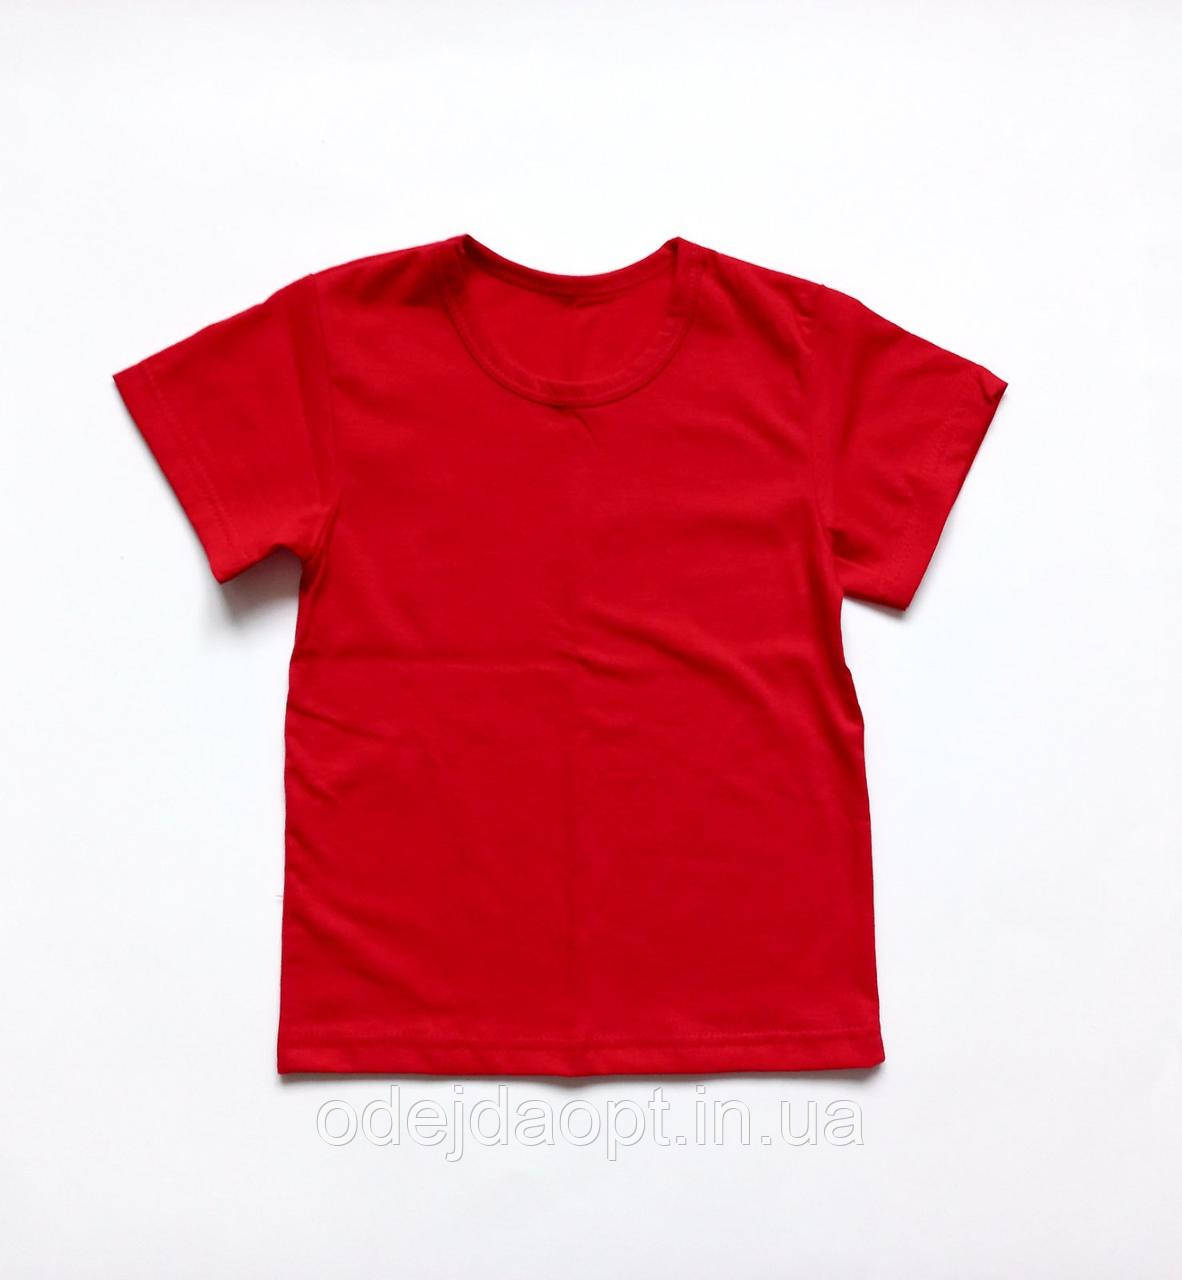 Дитяча однотонна червона футболка 2,3,4,5,6,7, 8, 9, 10, 11, 12, 13, 14, 15 років